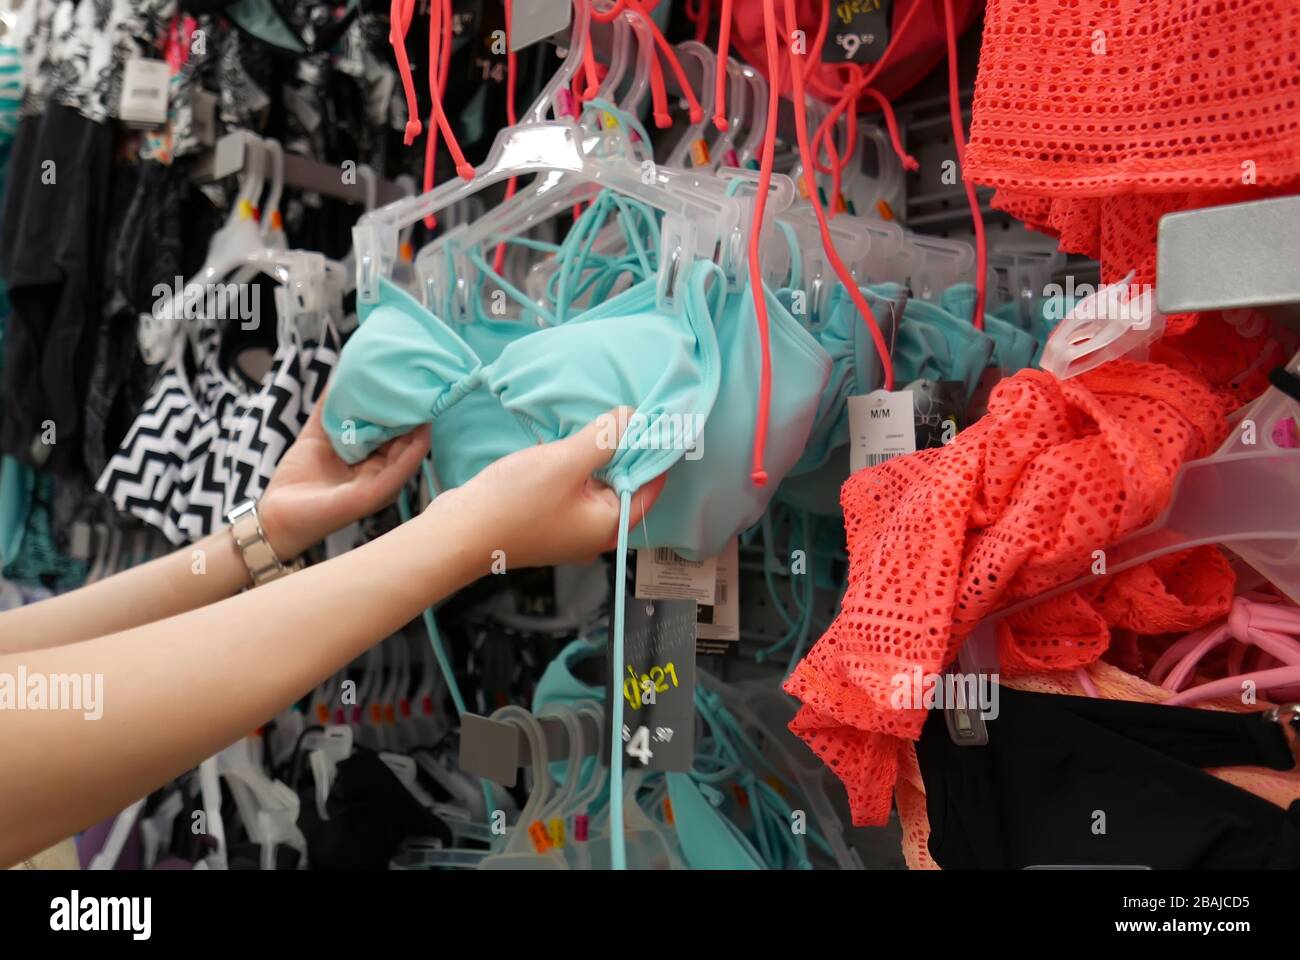 Femme achetant un maillot de bain à l'intérieur du magasin Walmart Banque D'Images